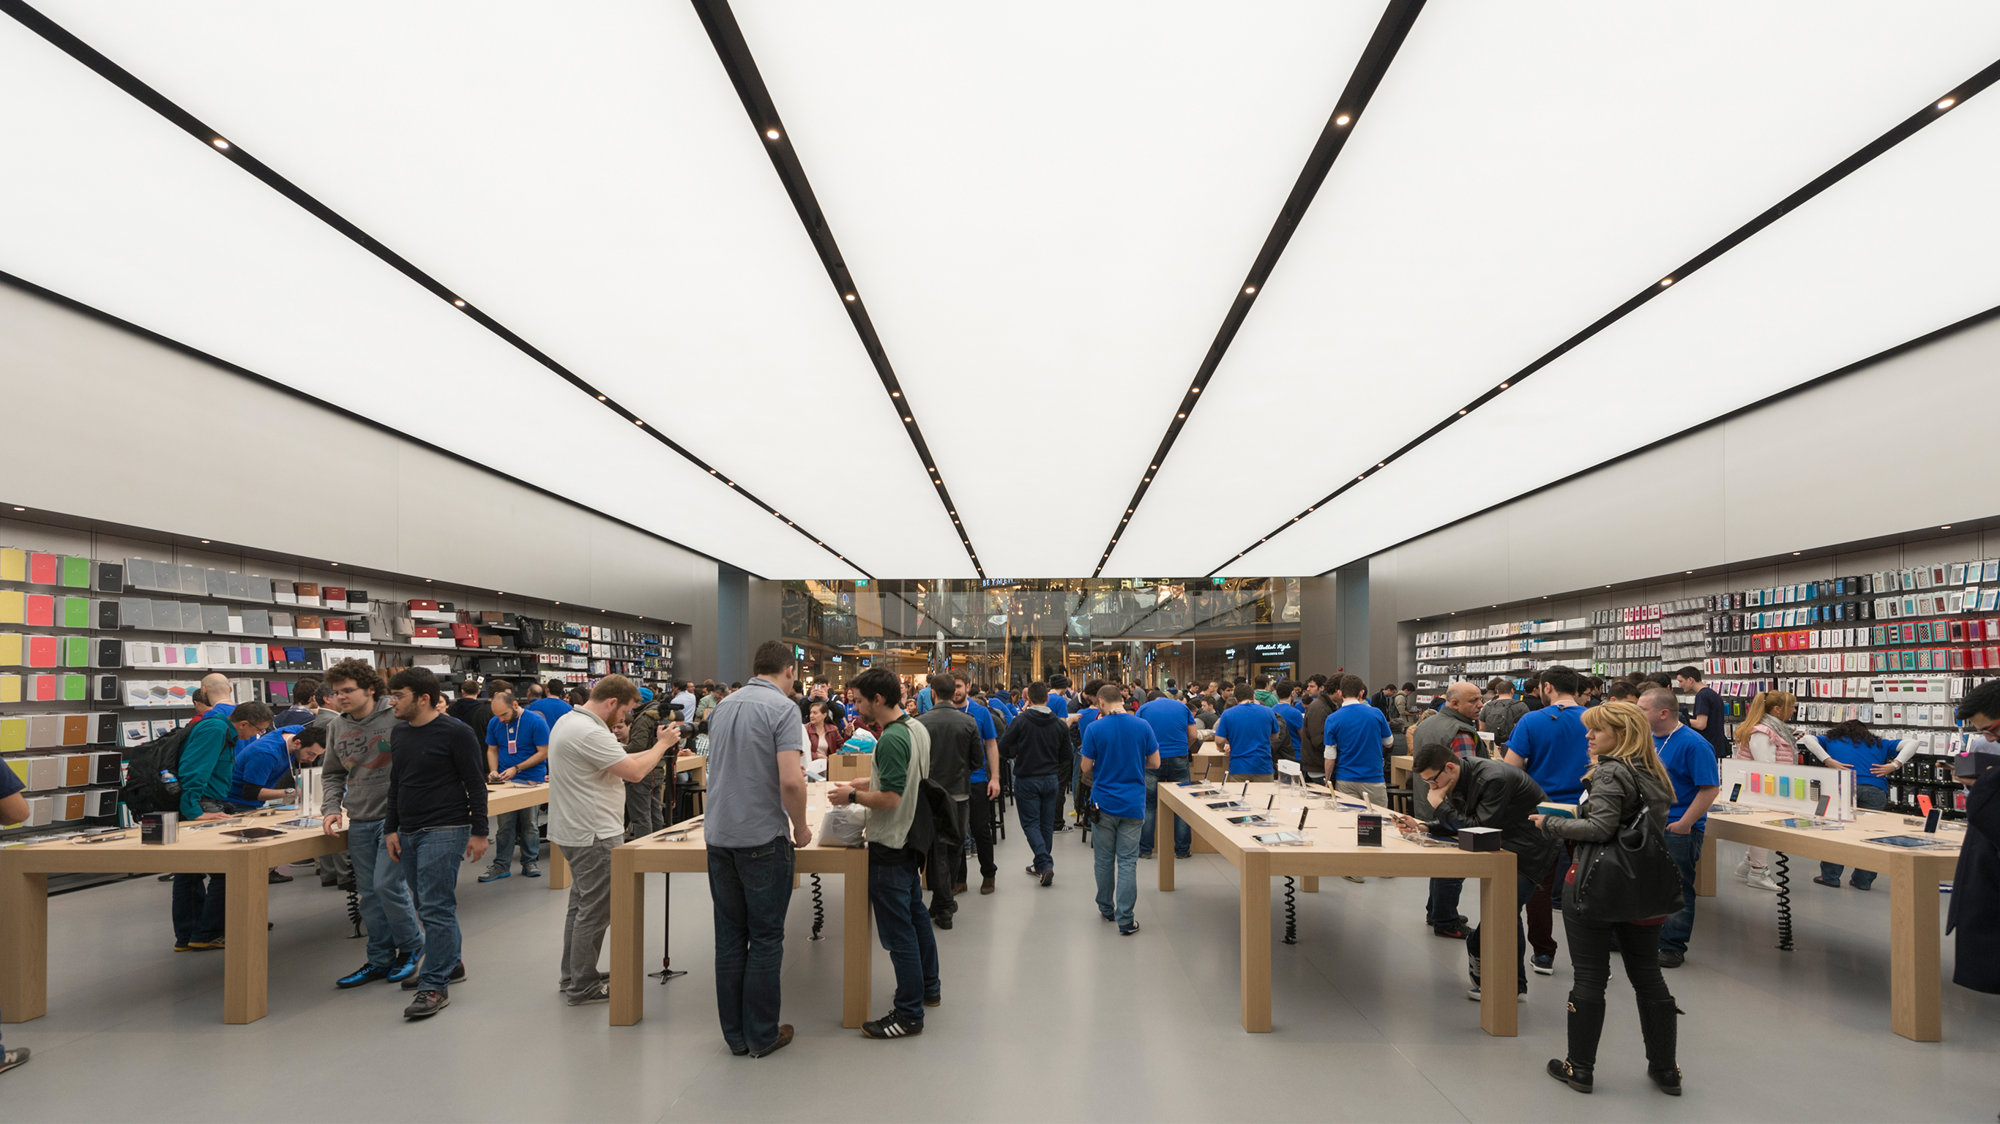 Apple Store Zorlu Center - Istanbul / Turkey, Açılışından b…